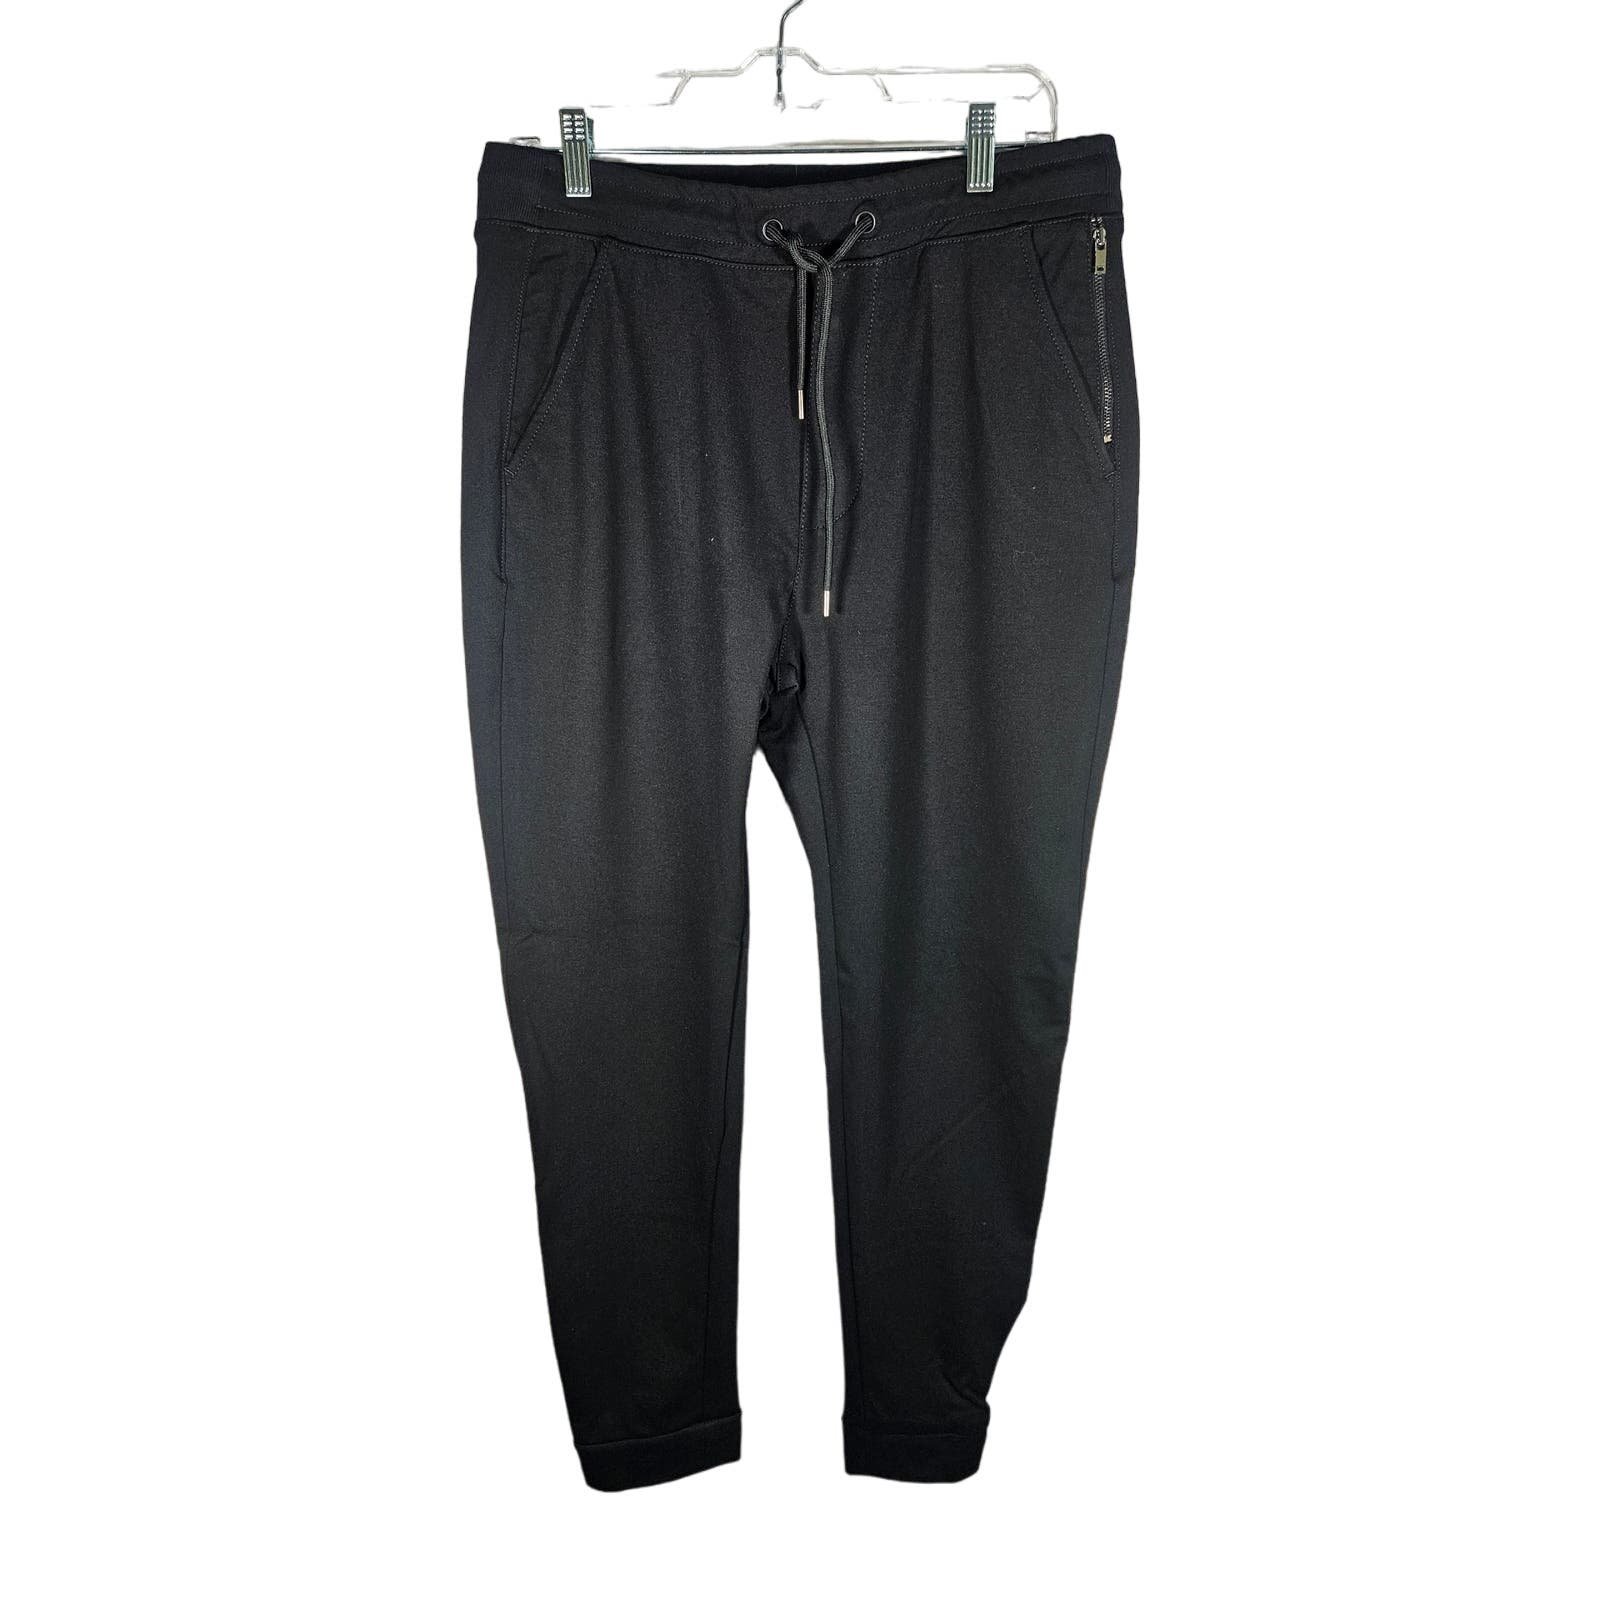 large discount Mavi Jeans Women´s Activewear Denim Pants Black Size 29 Large Pockets NWT JdGwZRFlc best sale